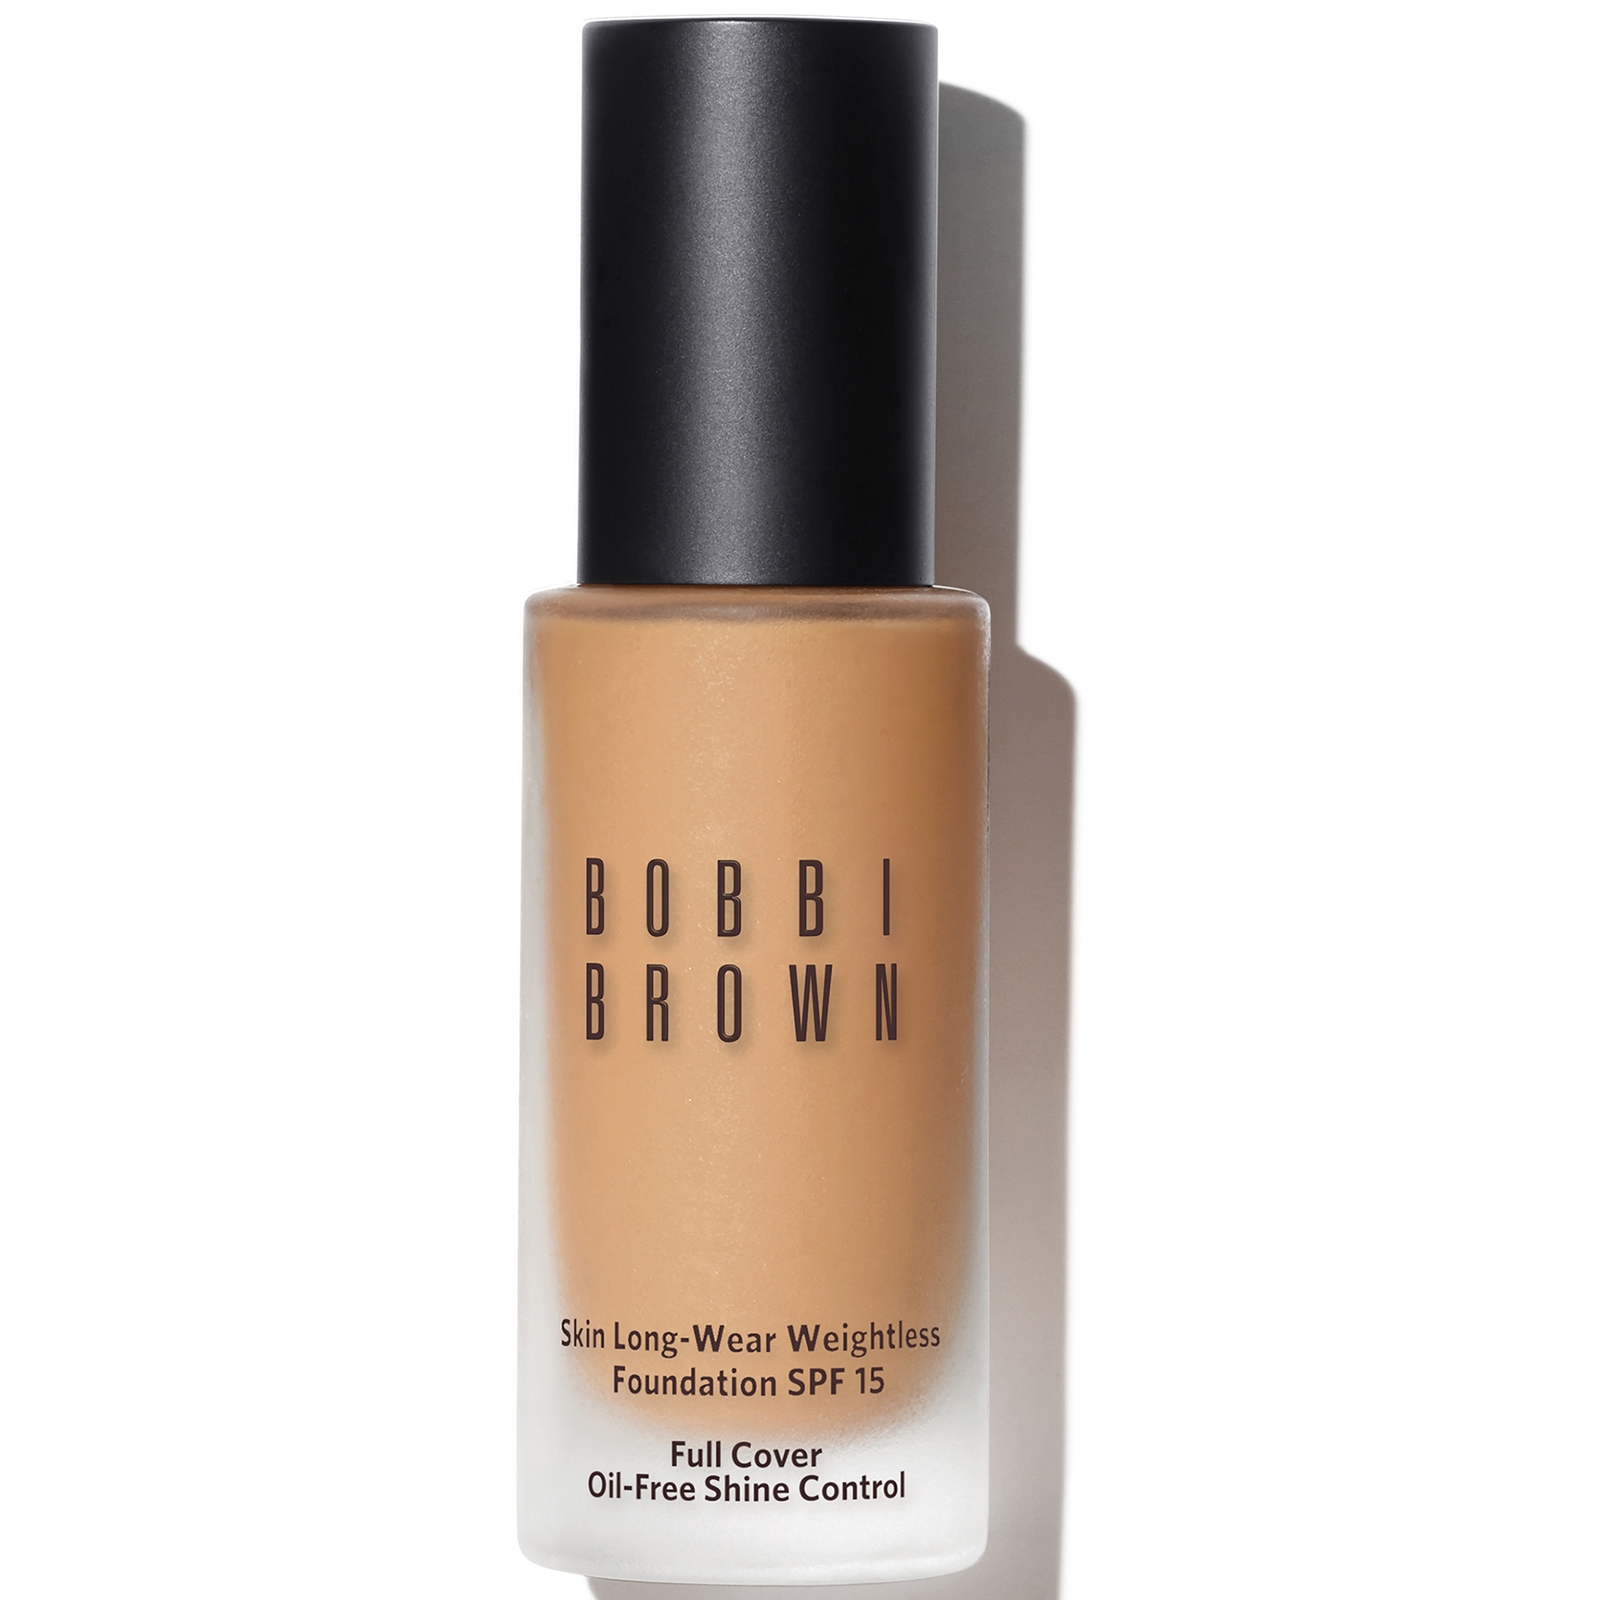 Bobbi Brown Skin Long-Wear Weightless Foundation SPF 15 (verschiedene Farbtöne) - GoldenBeige von Bobbi Brown